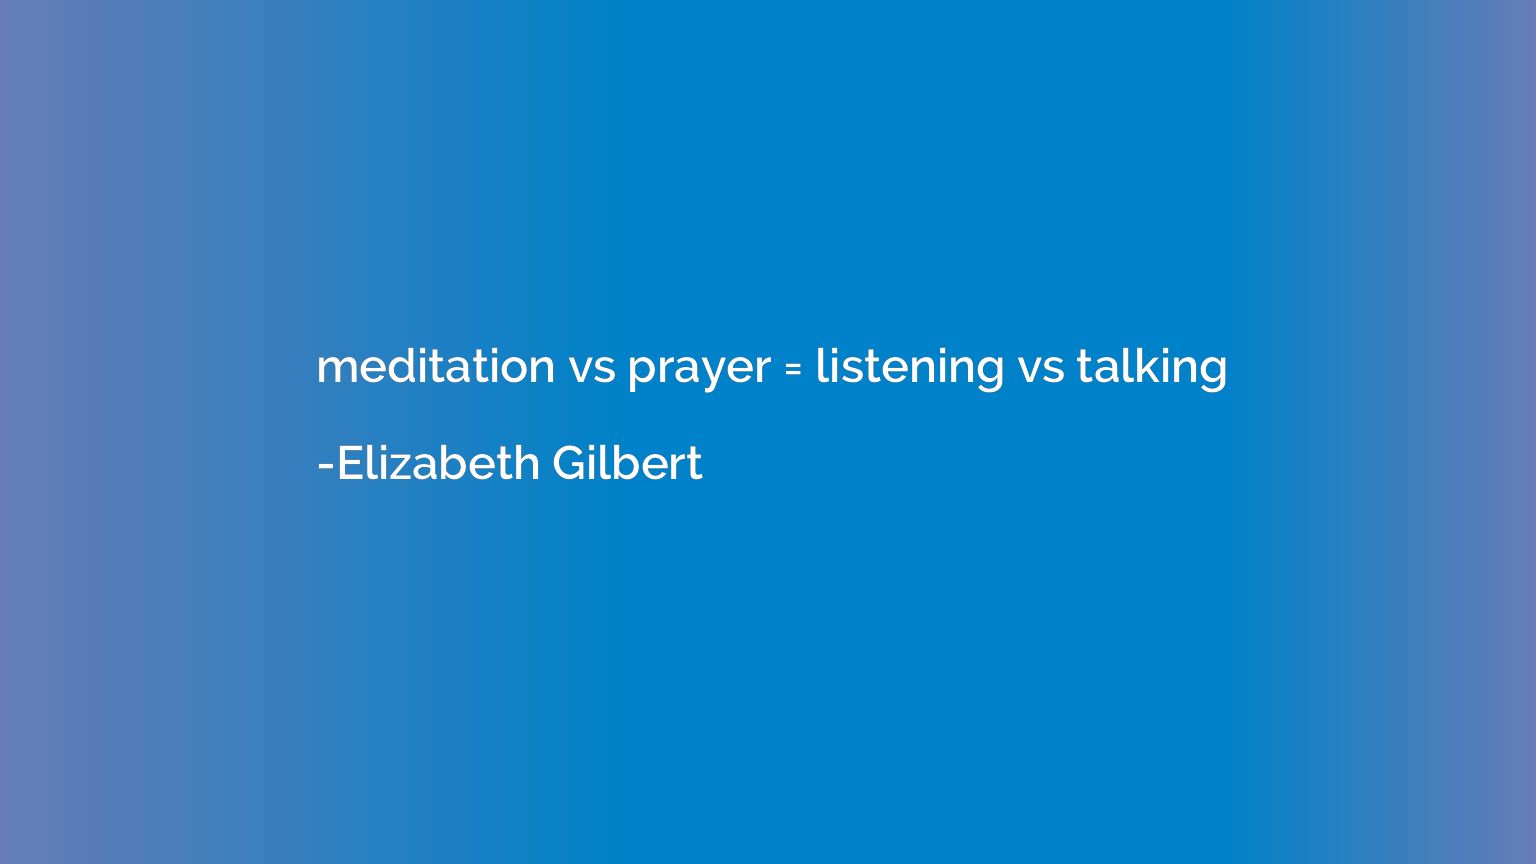 meditation vs prayer = listening vs talking